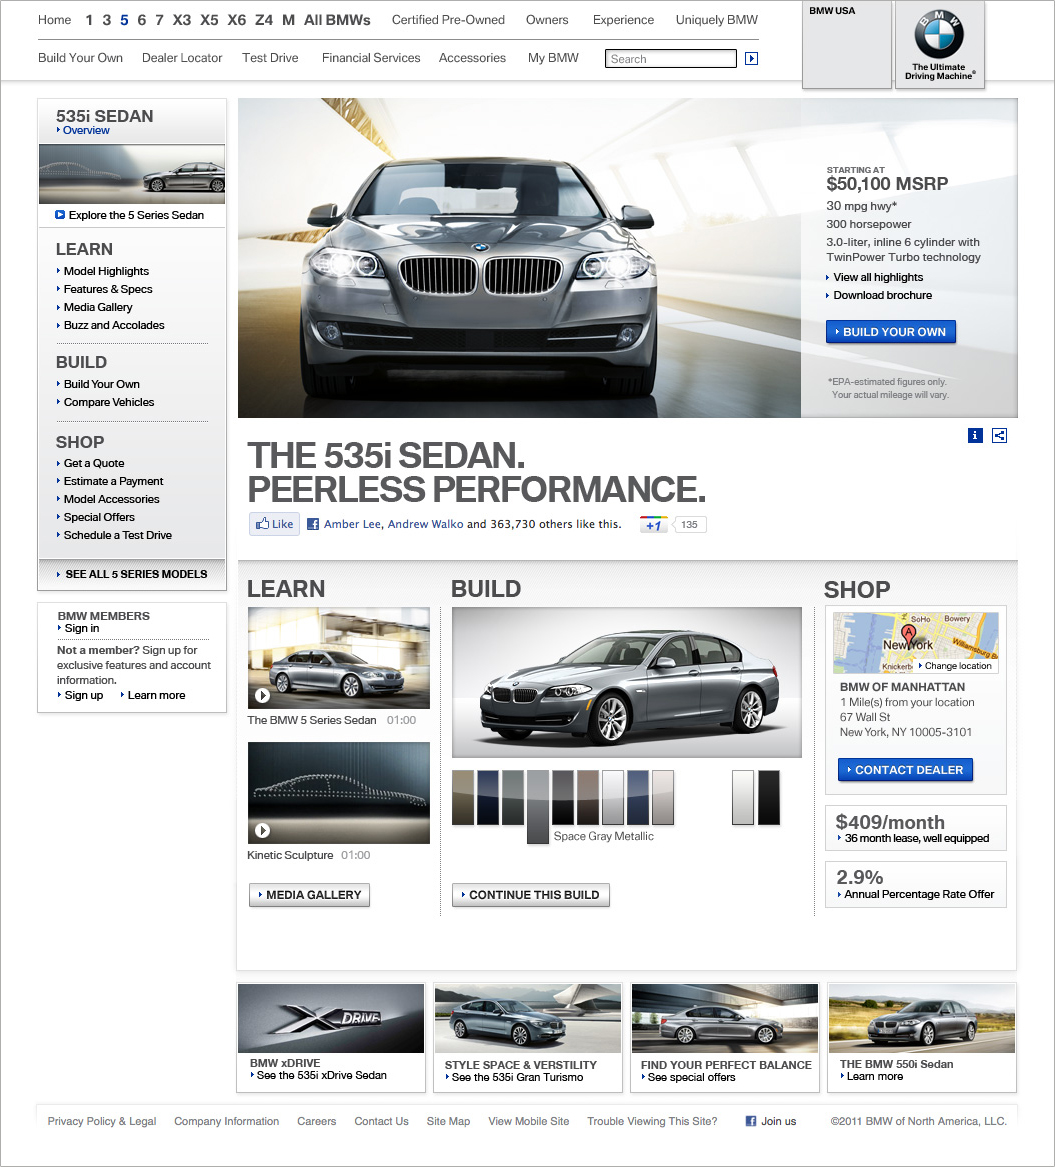 BMWusa.com